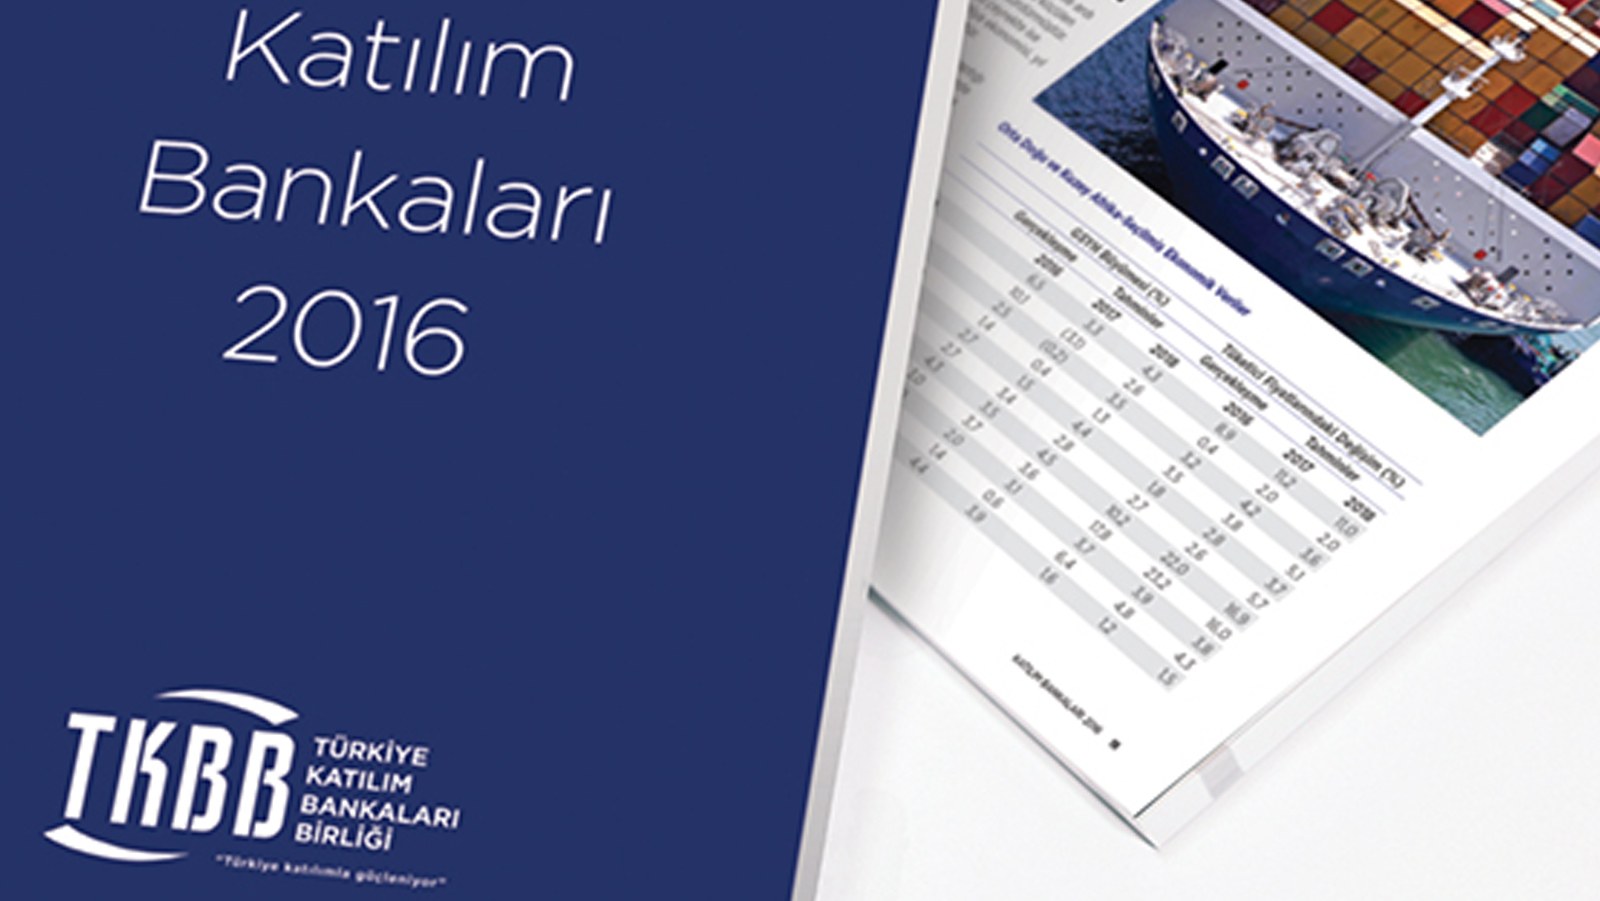 TÜRKİYE KATILIM BANKALARI BİRLİĞİ / 2016 Faaliyet Raporu / 2016 Annual Report